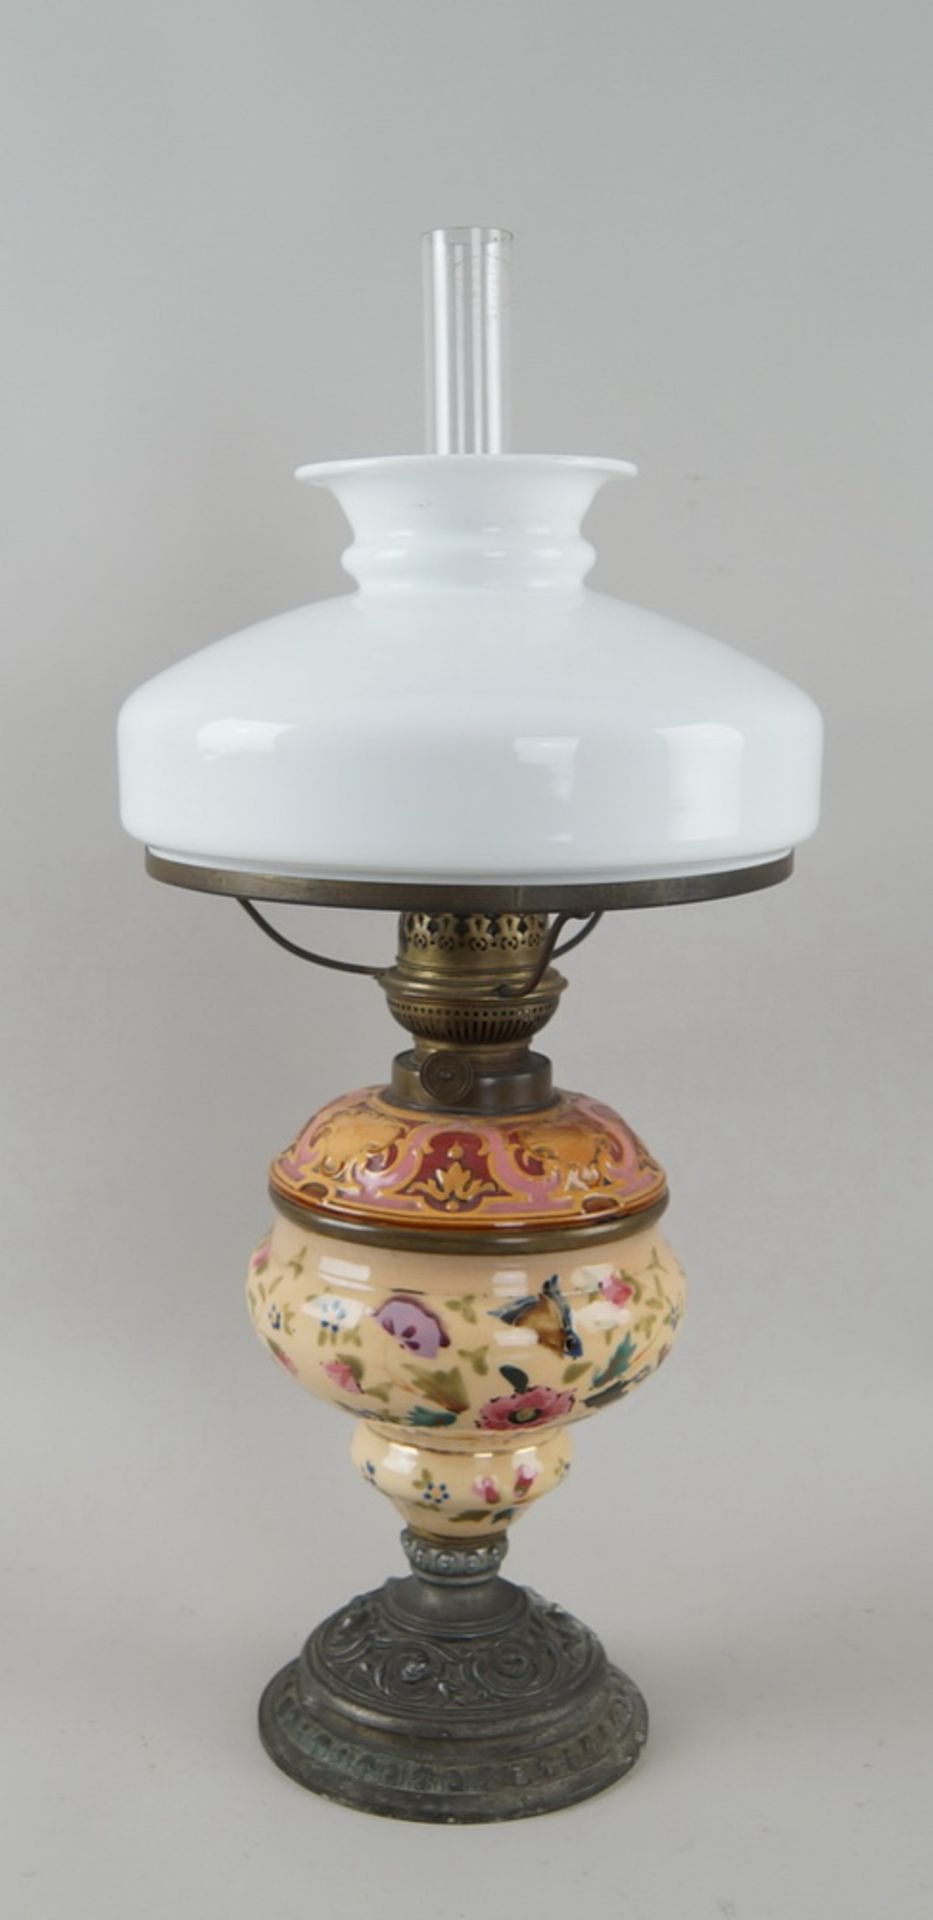 Schöne Petroleumlampe mit Milchglasschirm und Halm, Keramik, bunt bemalt, H 58cm,Durchmesser 26 cm